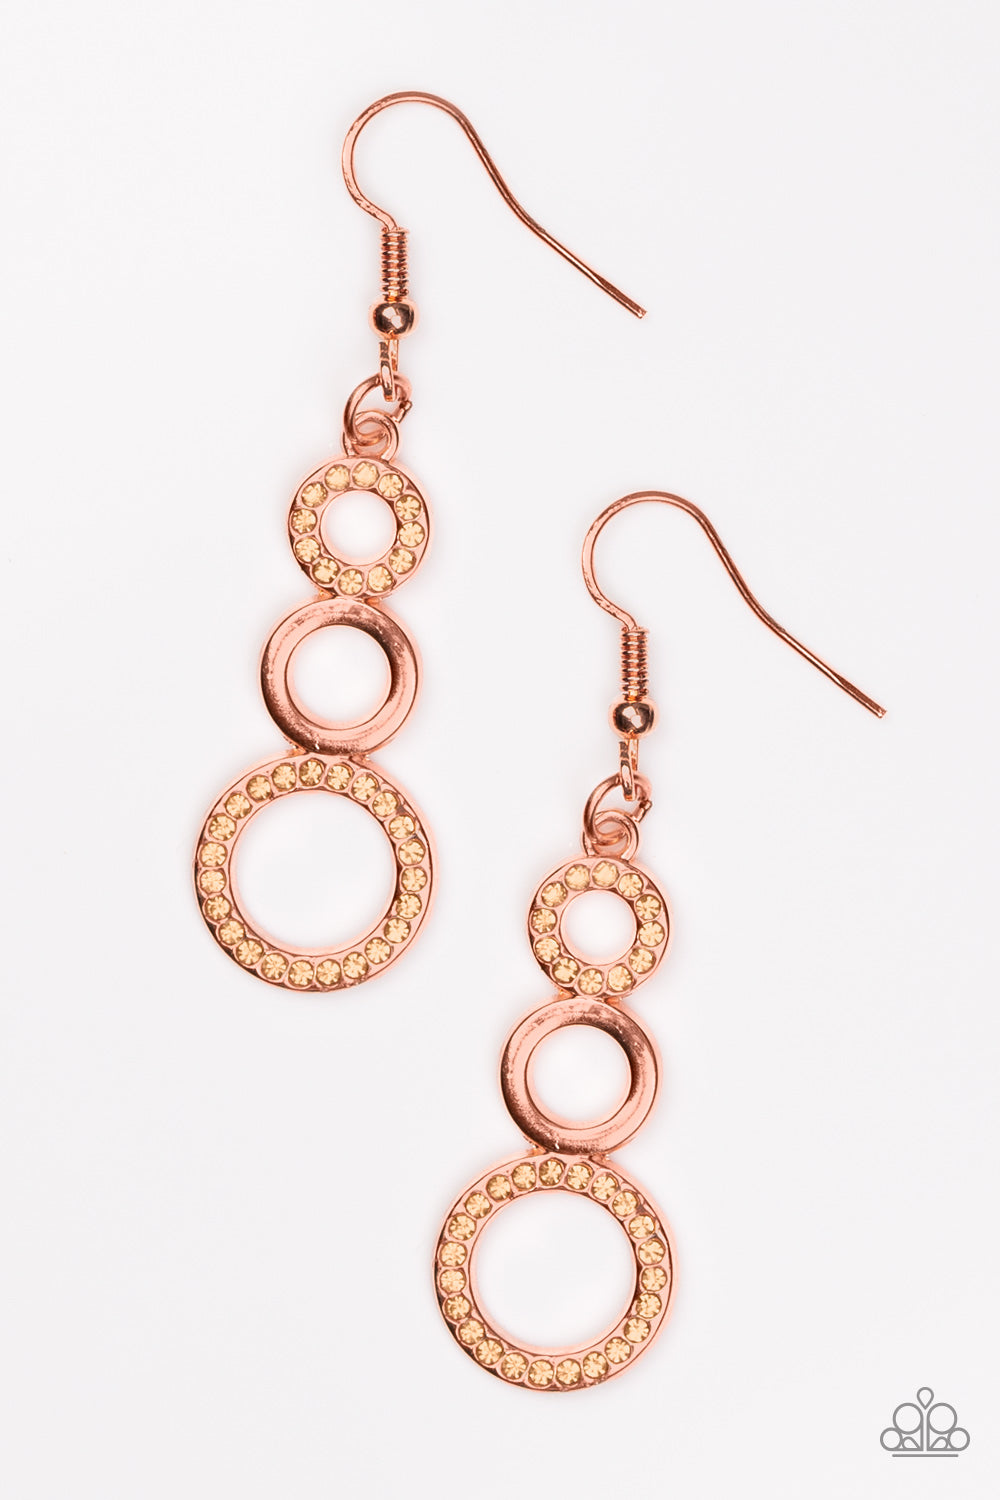 Bubble Bustle Copper Paparazzi Earrings Cashmere Pink Jewels - Cashmere Pink Jewels & Accessories, Cashmere Pink Jewels & Accessories - Paparazzi